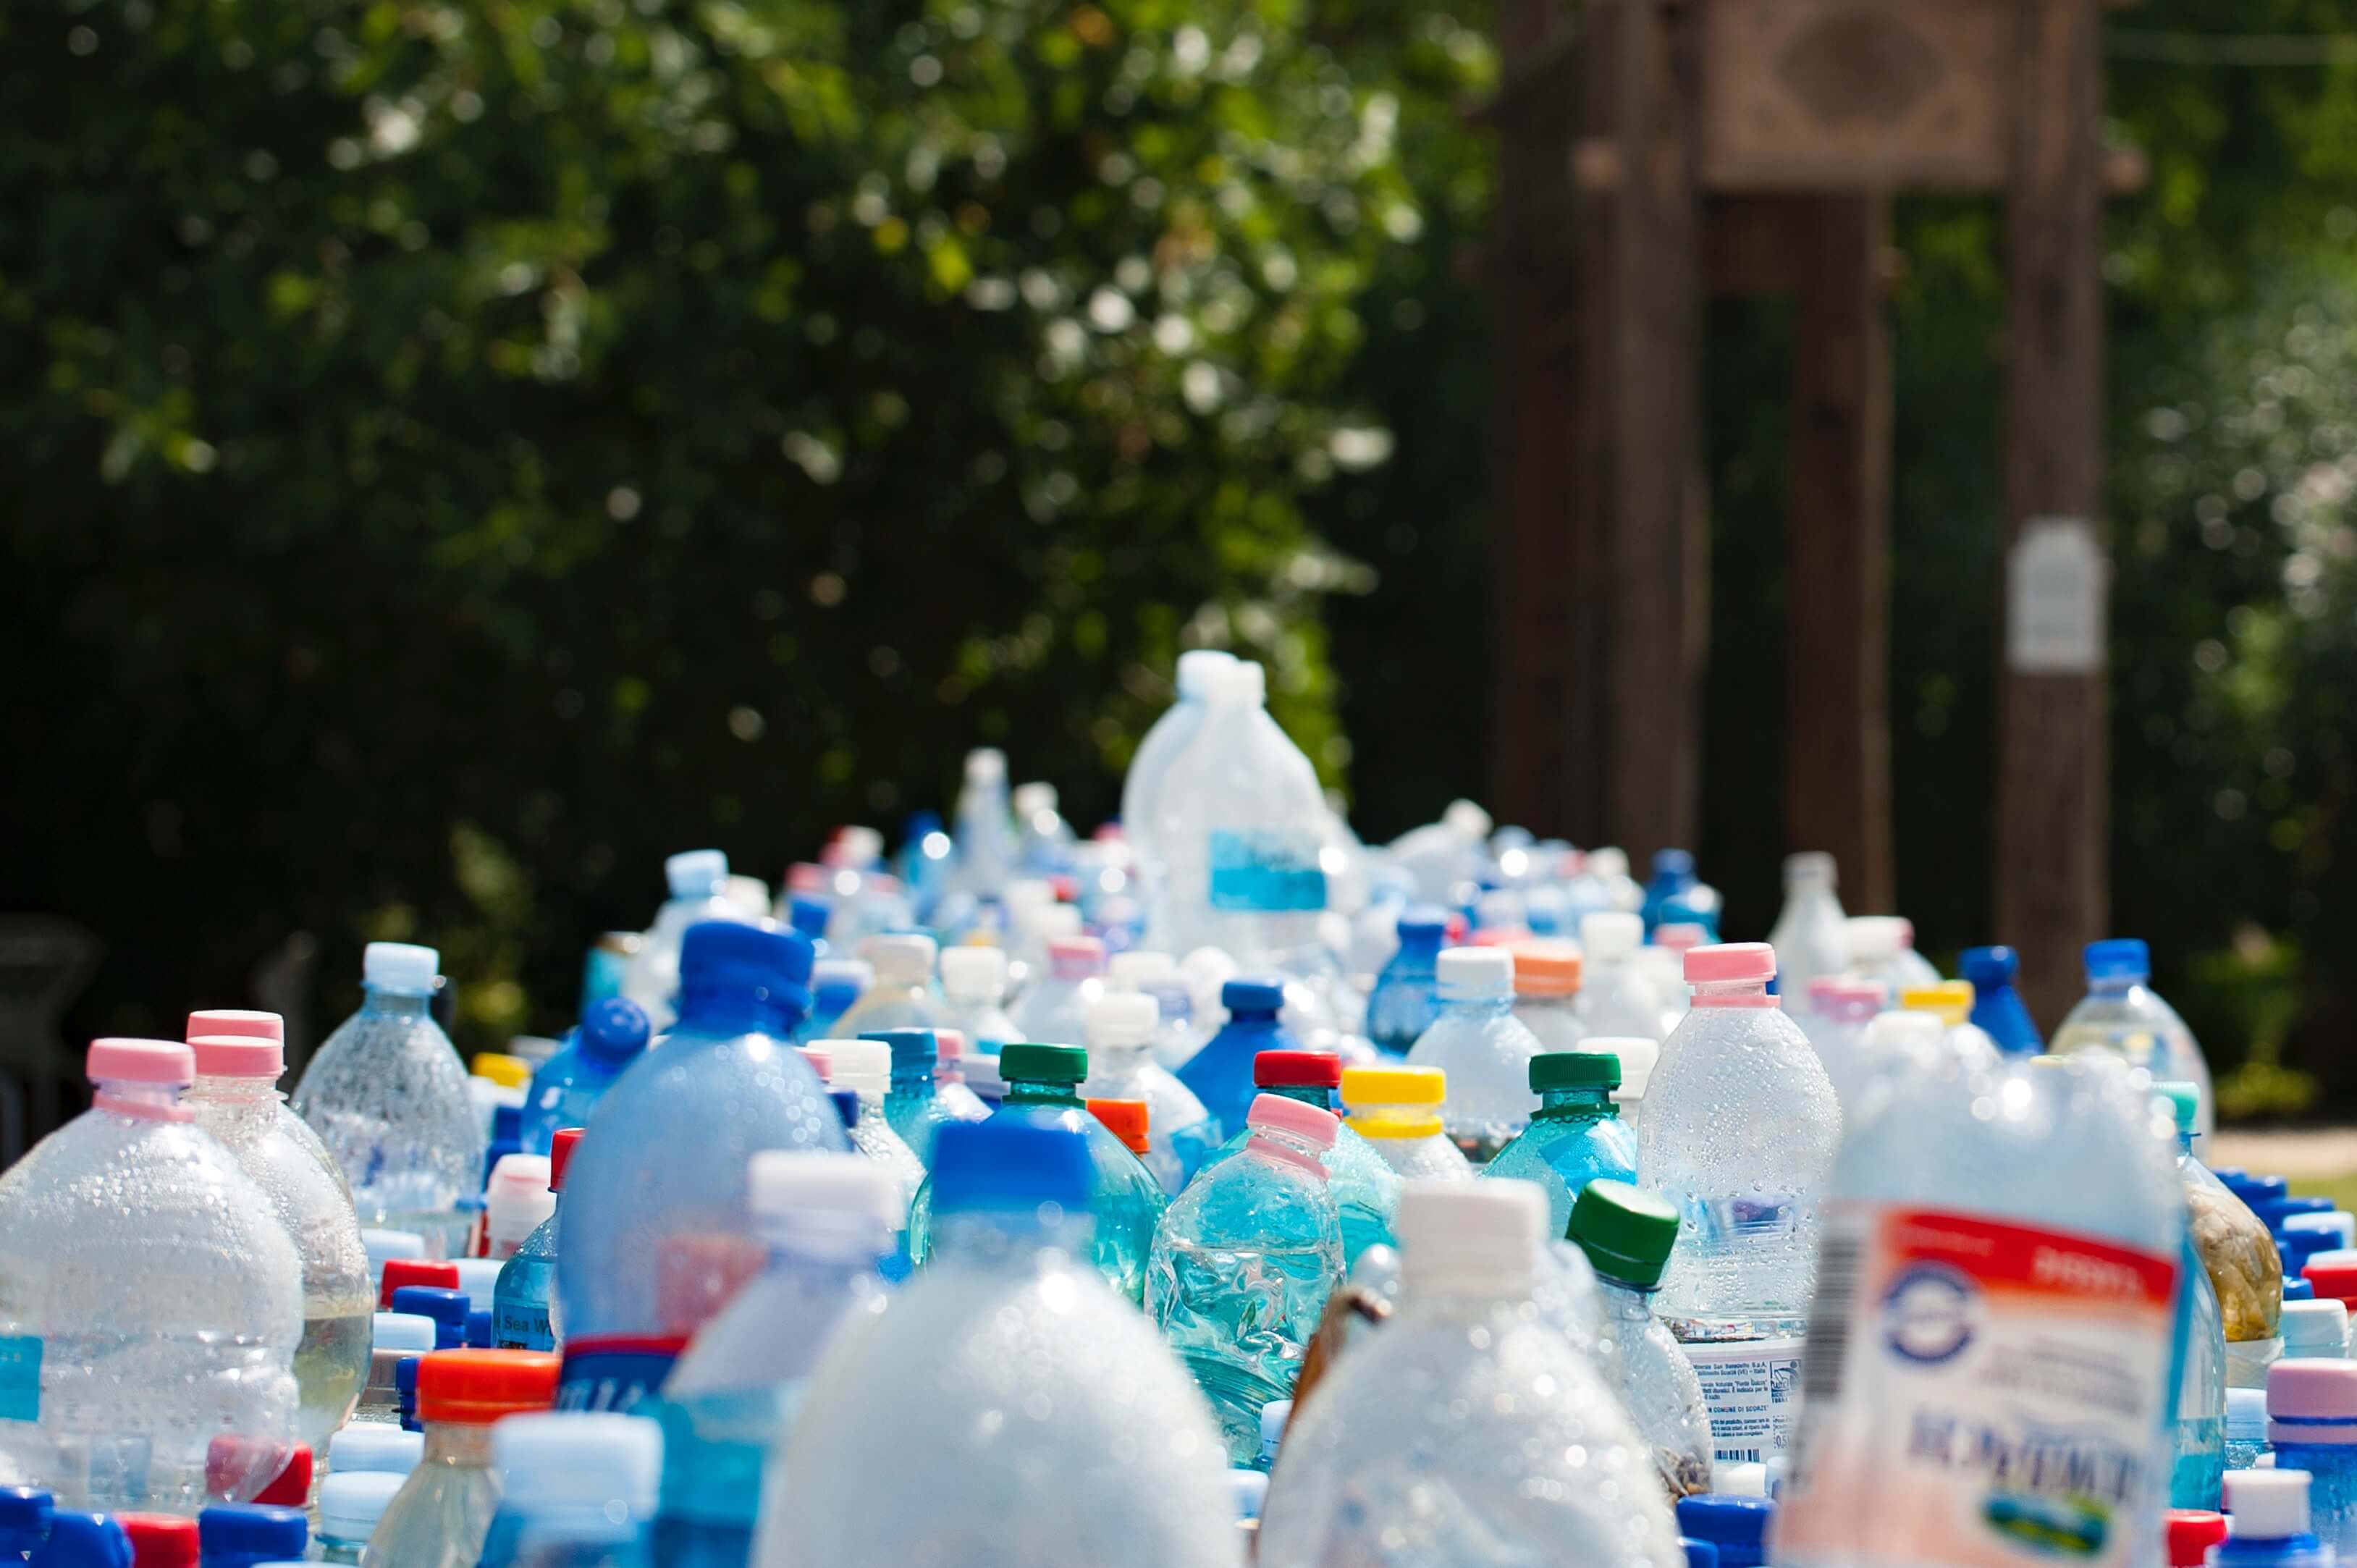 zálohovanie, odpady, PET fľaše, recyklácie, životné prostredie, Slovensko 